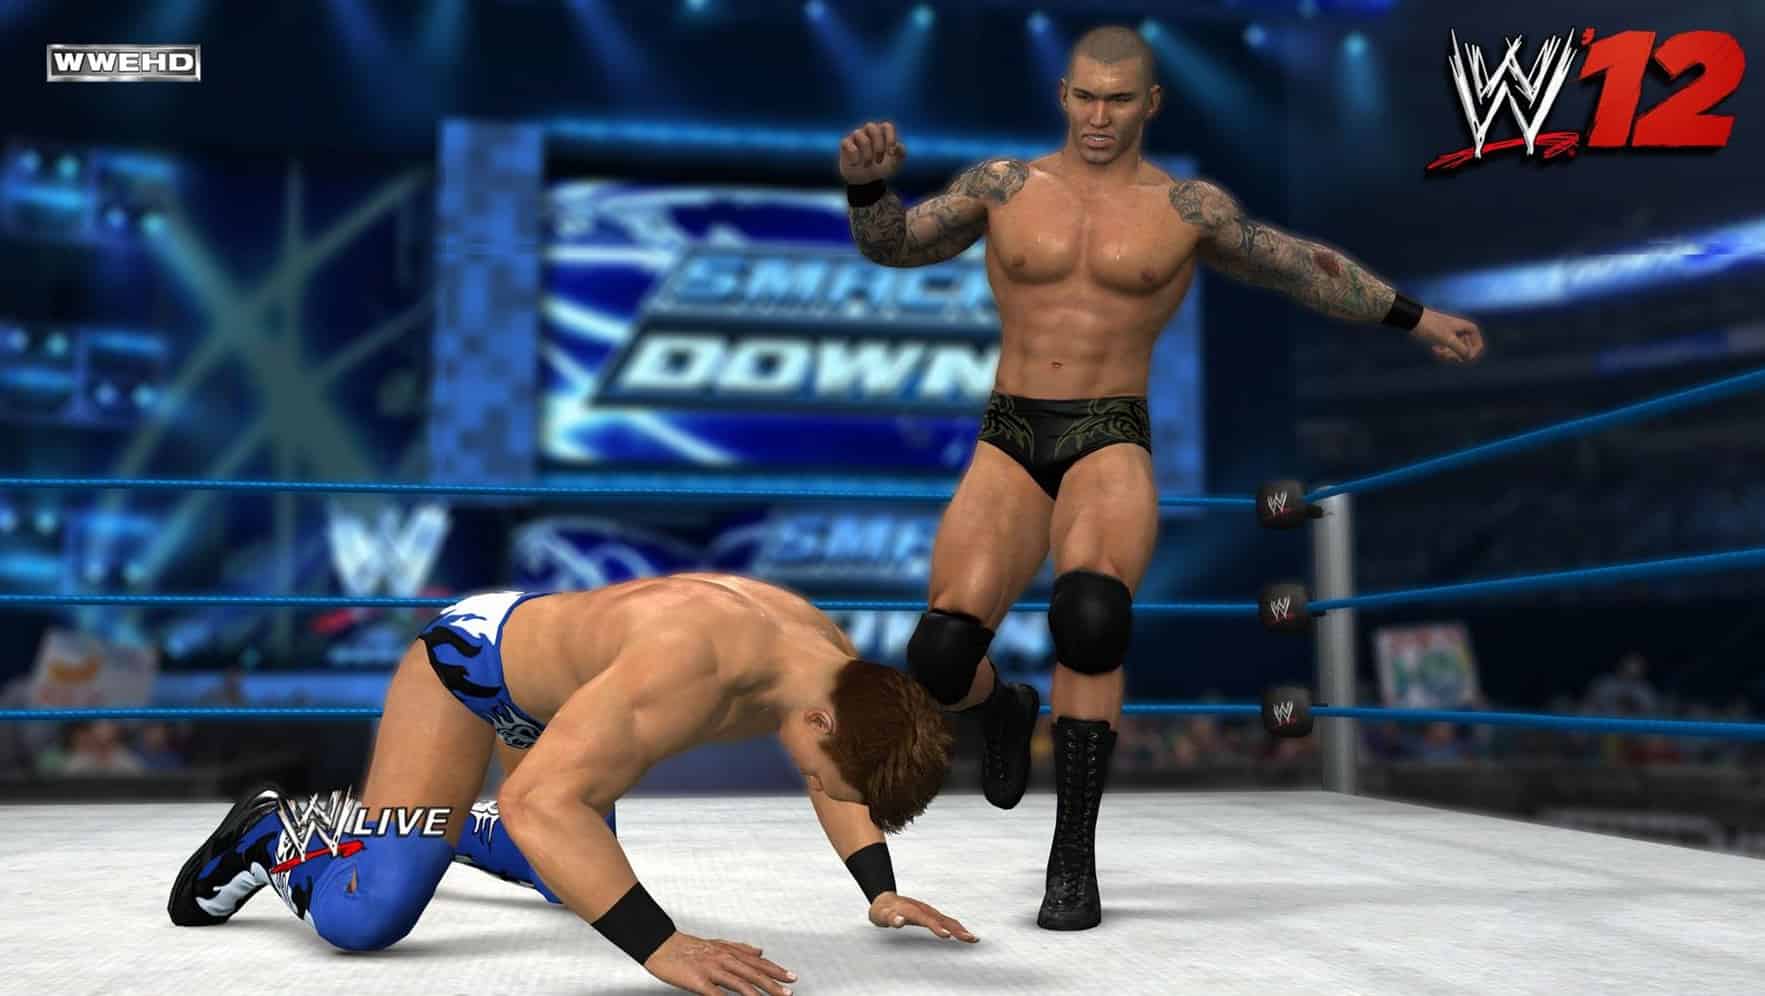 Randy Orton kicks a competitor in WWE '12.